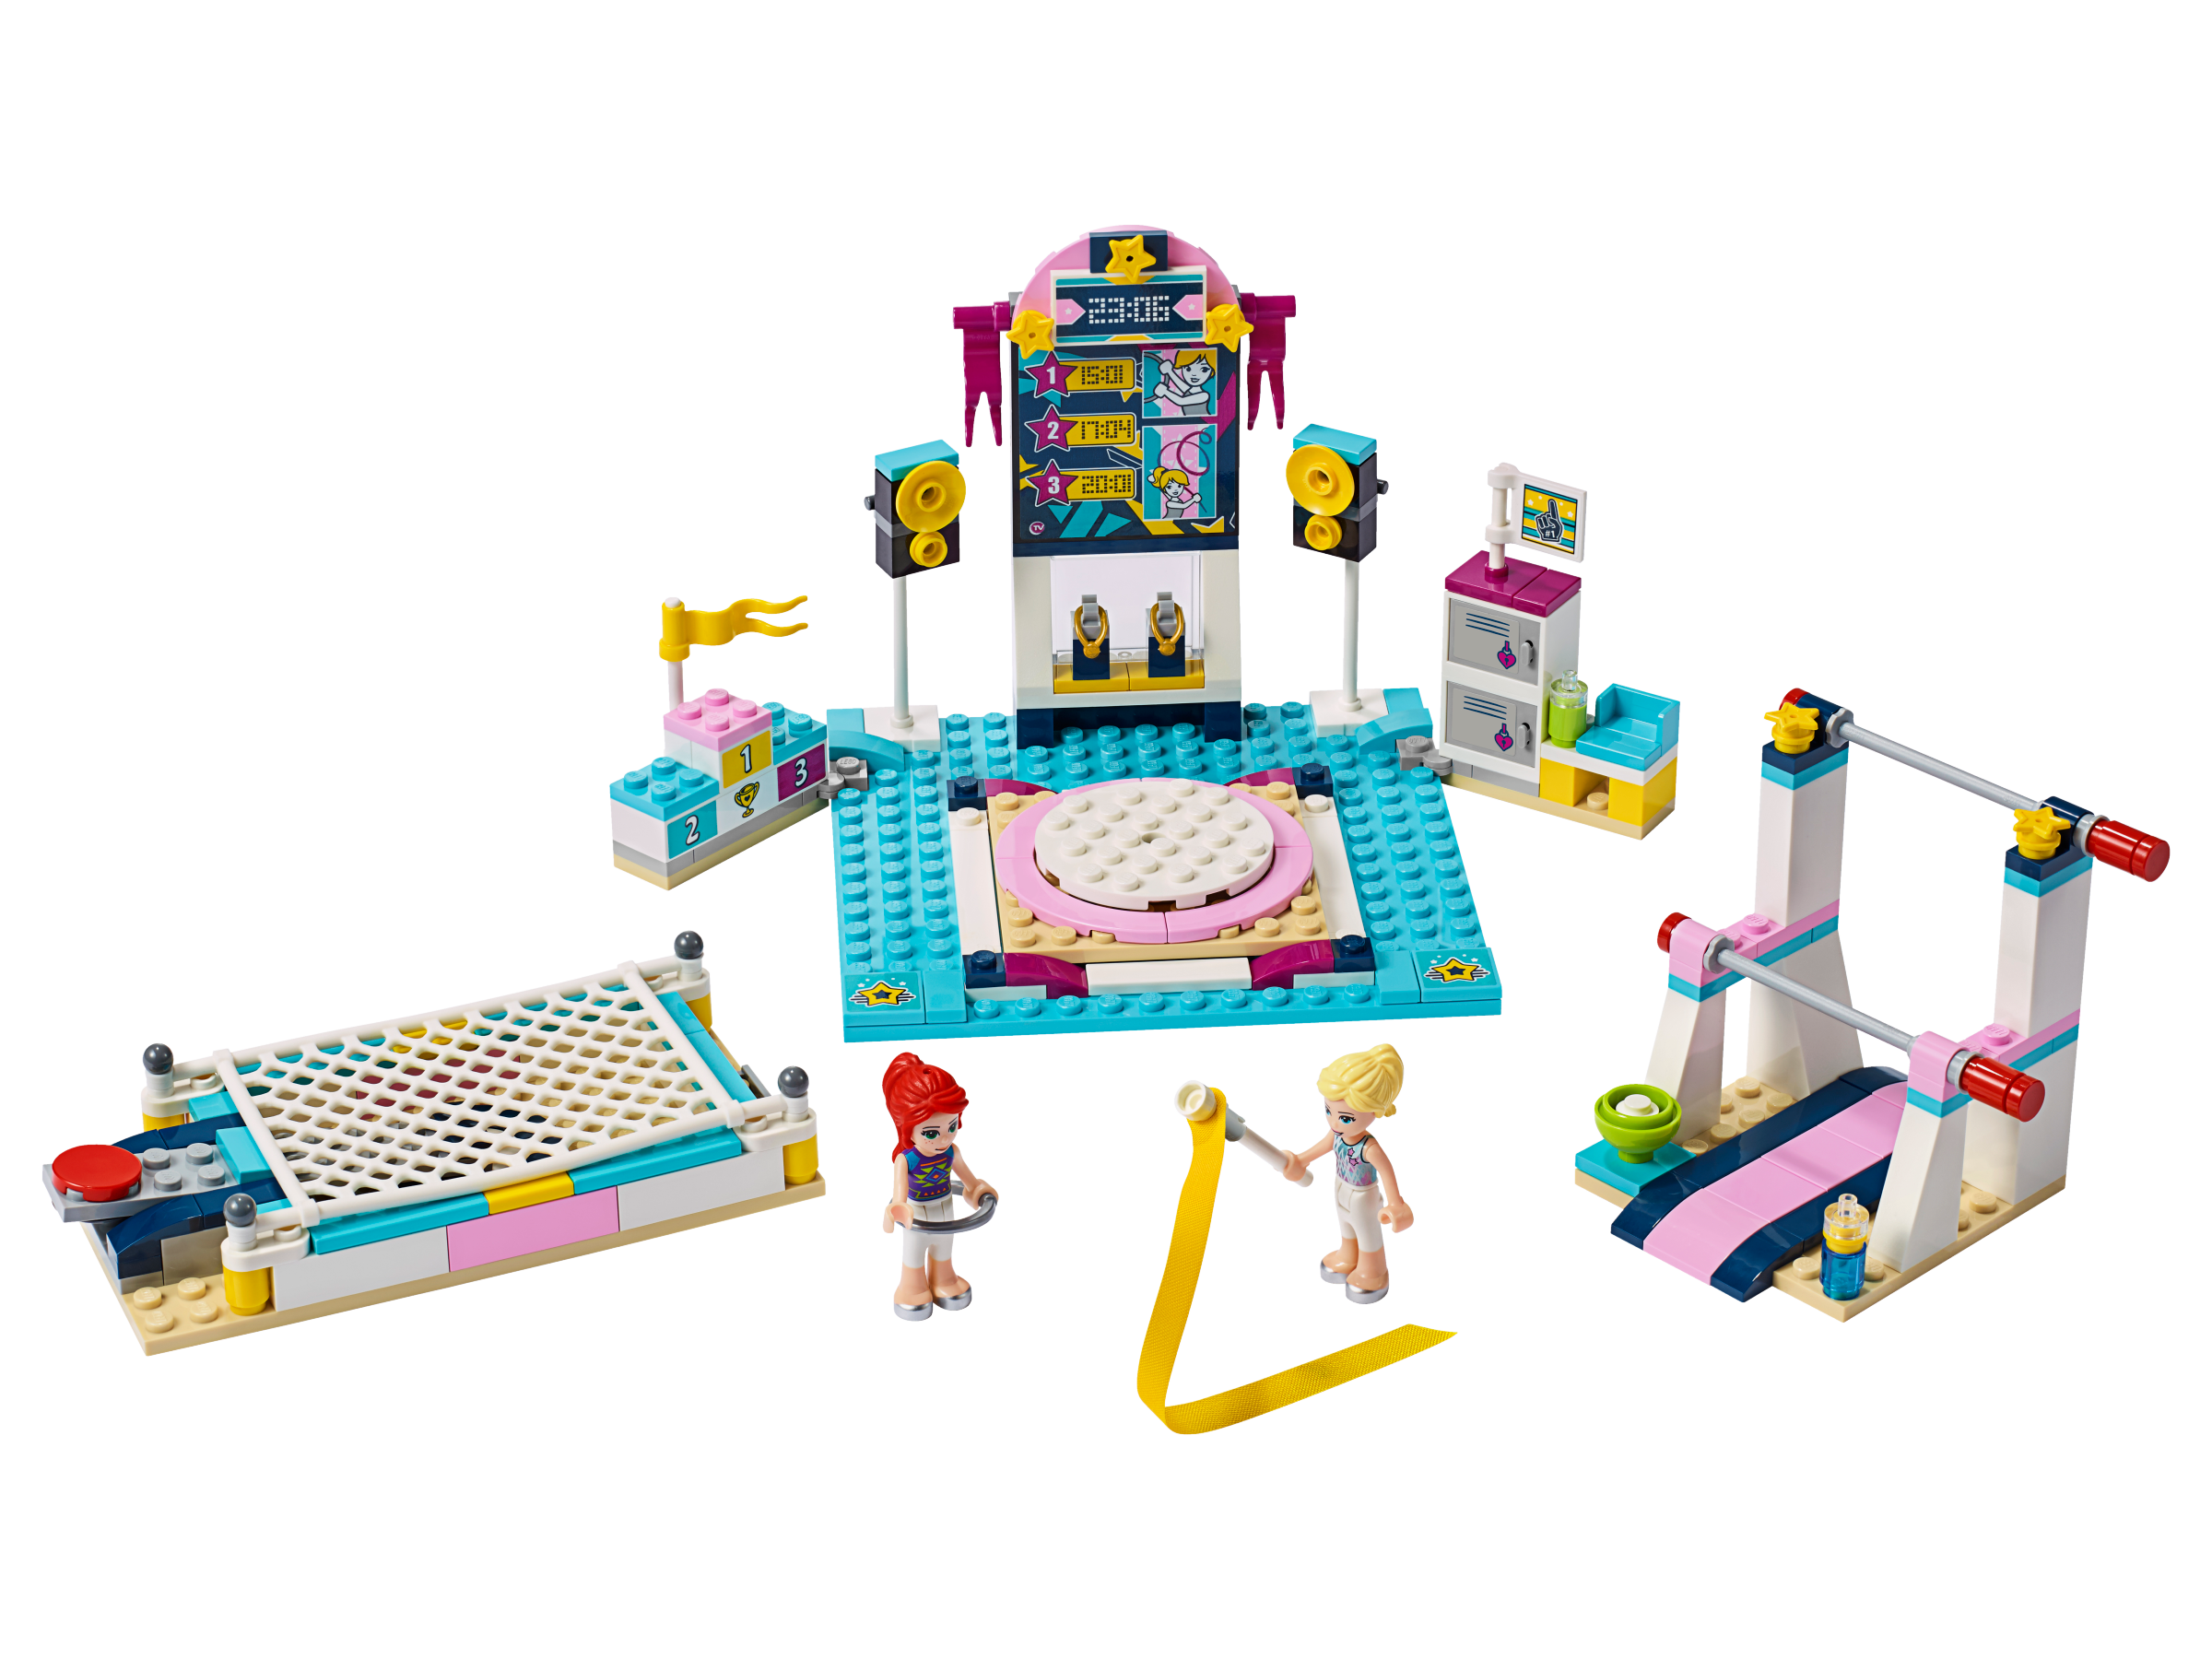 LEGO Friends - Spectacolul de gimnastica al lui Stephanie 41372